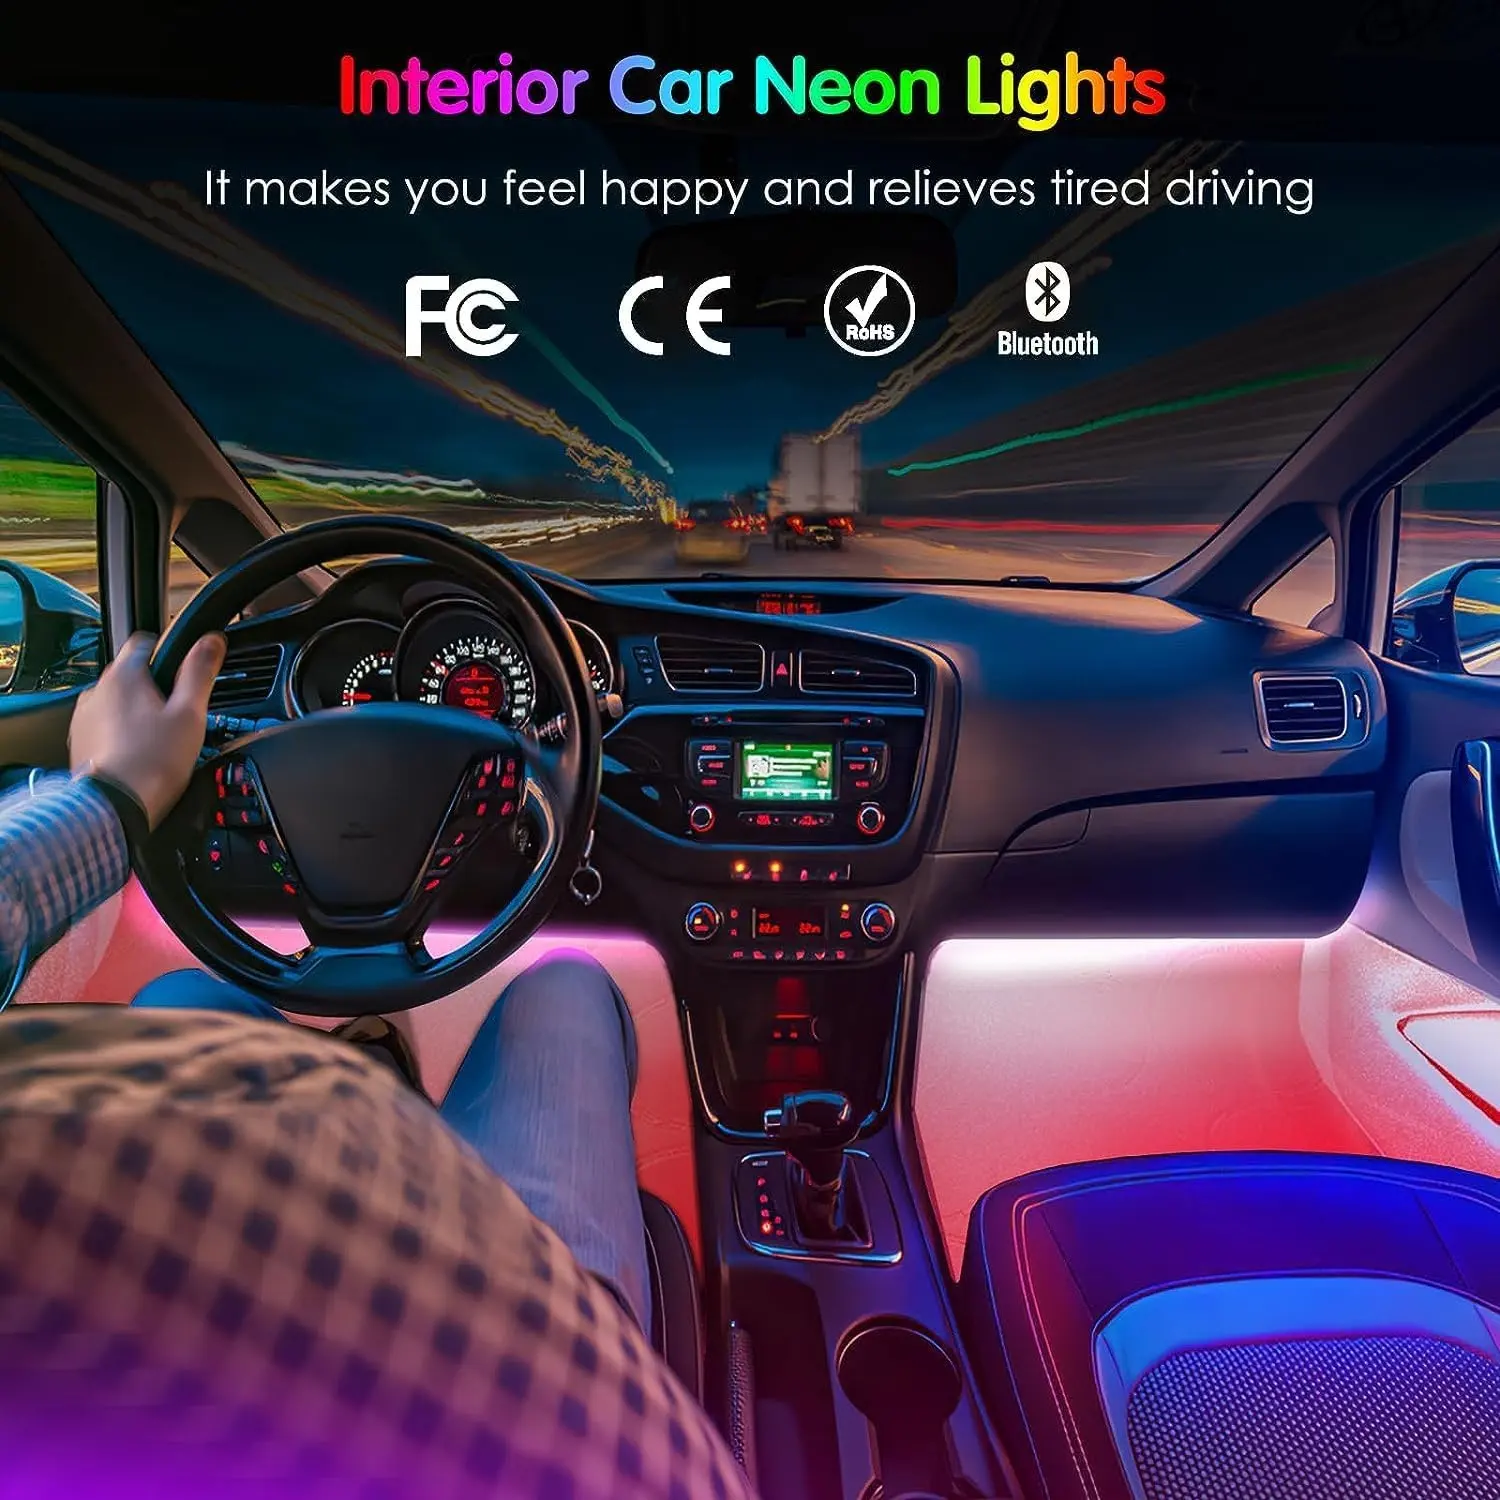 कार इंटीरियर एटमॉस्फियर लाइट्स कार लाइट्स एक्सेसरीज कारों के लिए स्मार्ट एलईडी लाइट स्ट्रिप्स ऐप के साथ आरजीबी इनसाइड एलईडी इंटीरियर